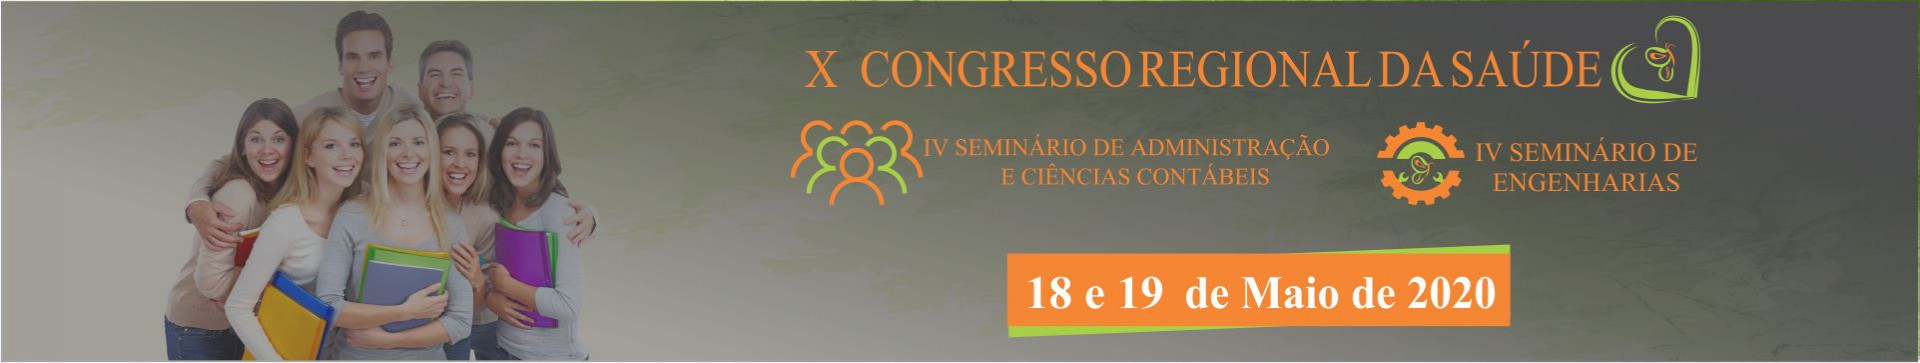 Congresso FCV 2020